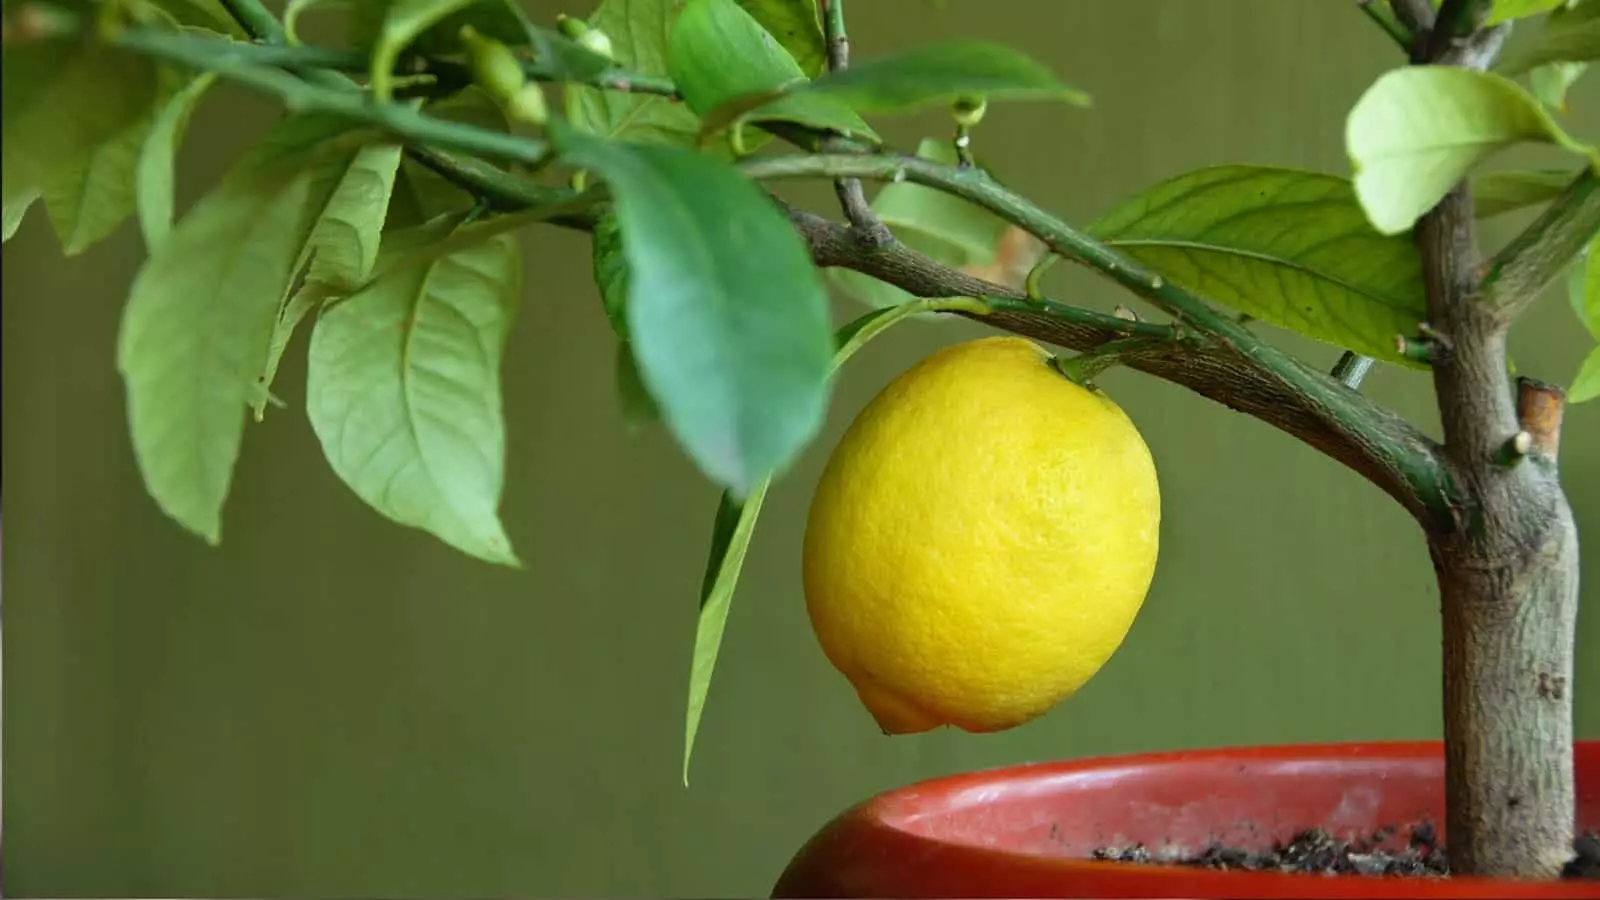 [Biljke kod kuće] Kako rasti citrus u kući?